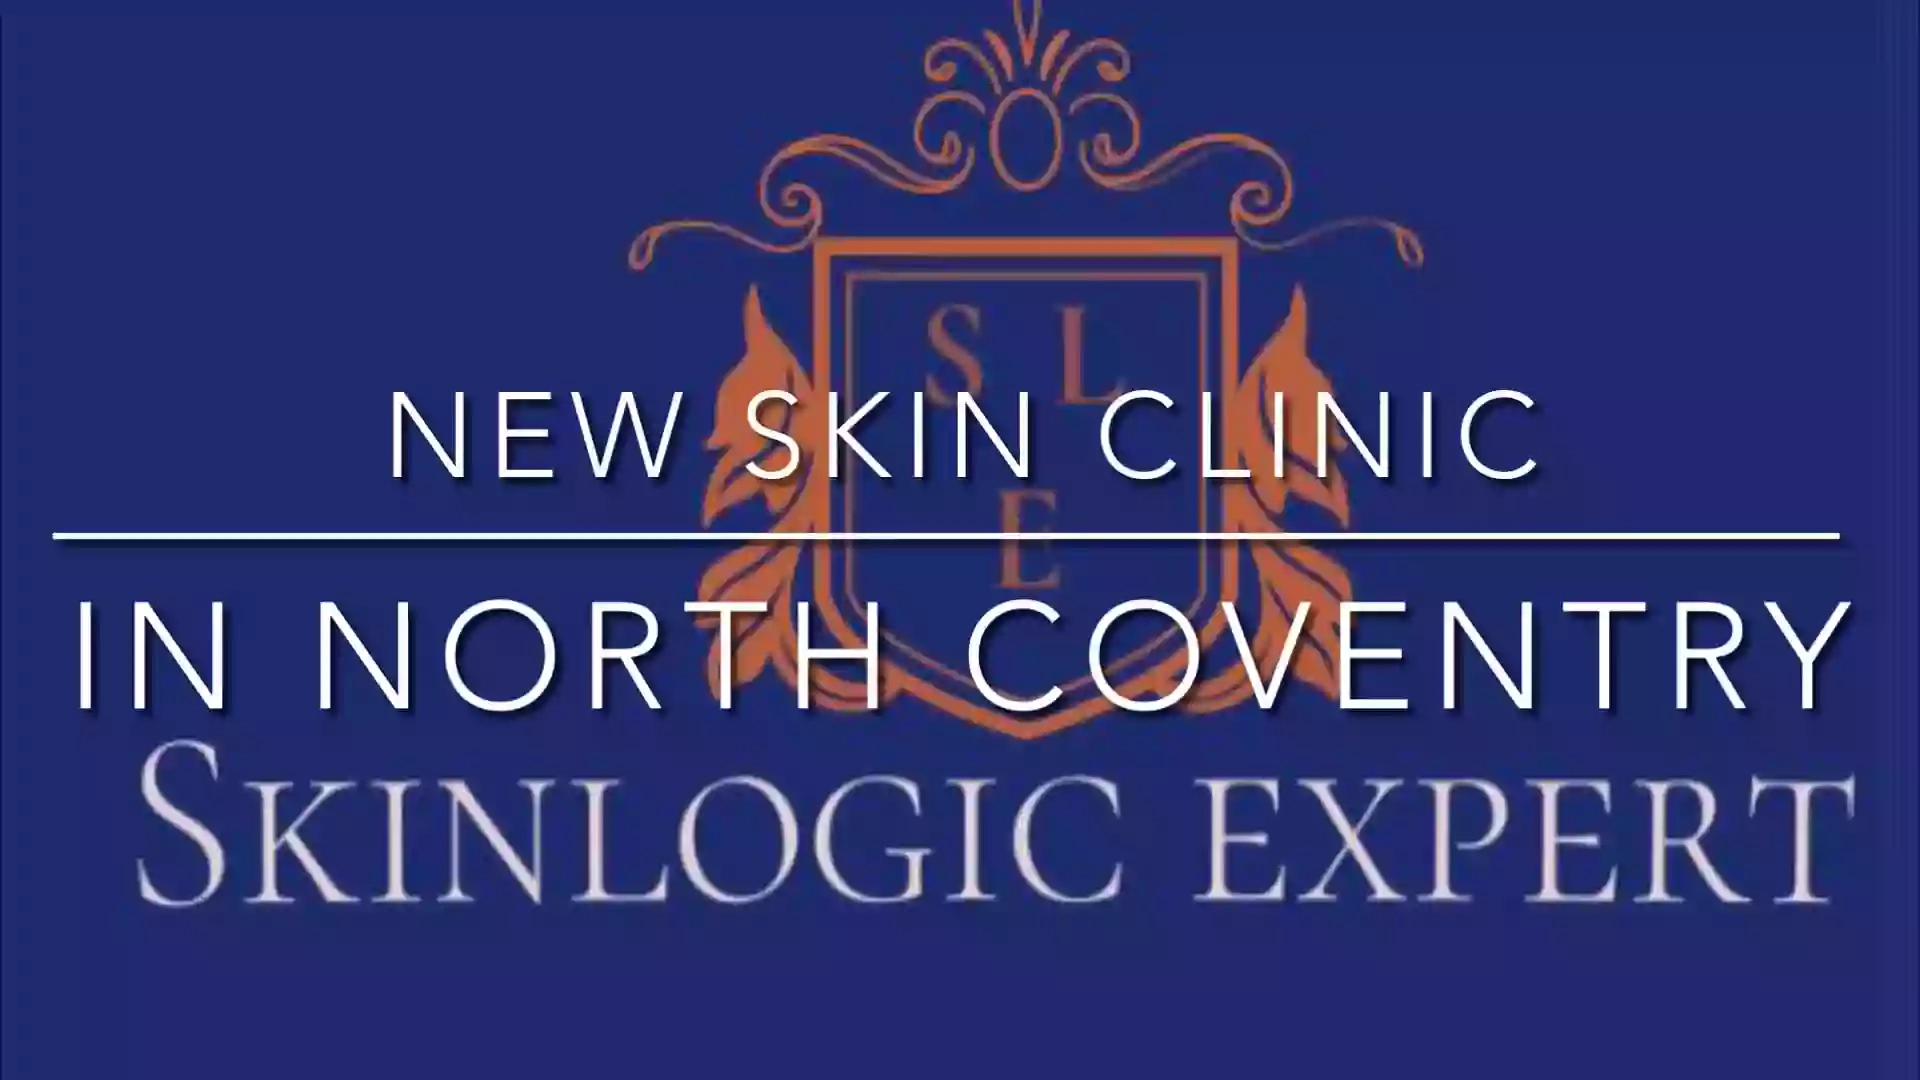 Skinlogic Expert Ltd